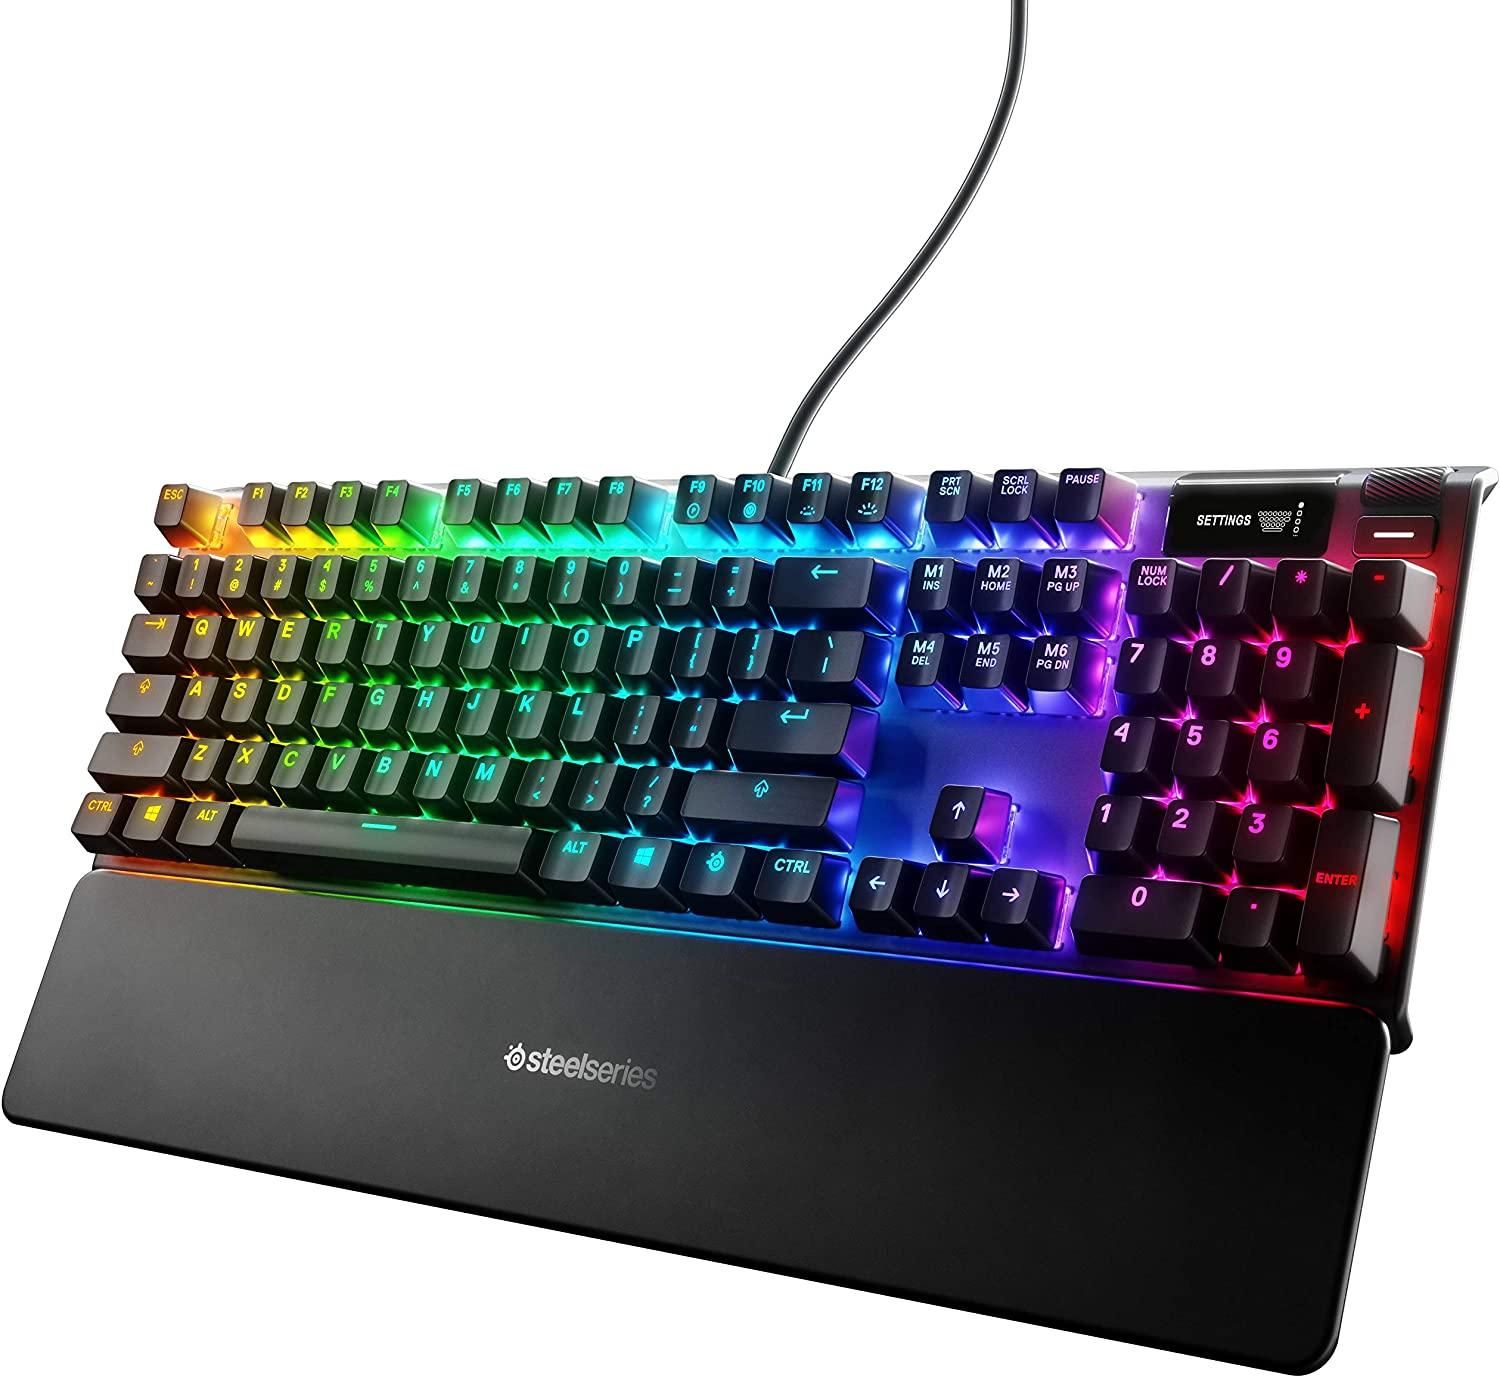 PBI SteelSeries Apex Pro Mechanical Gaming Keyboard